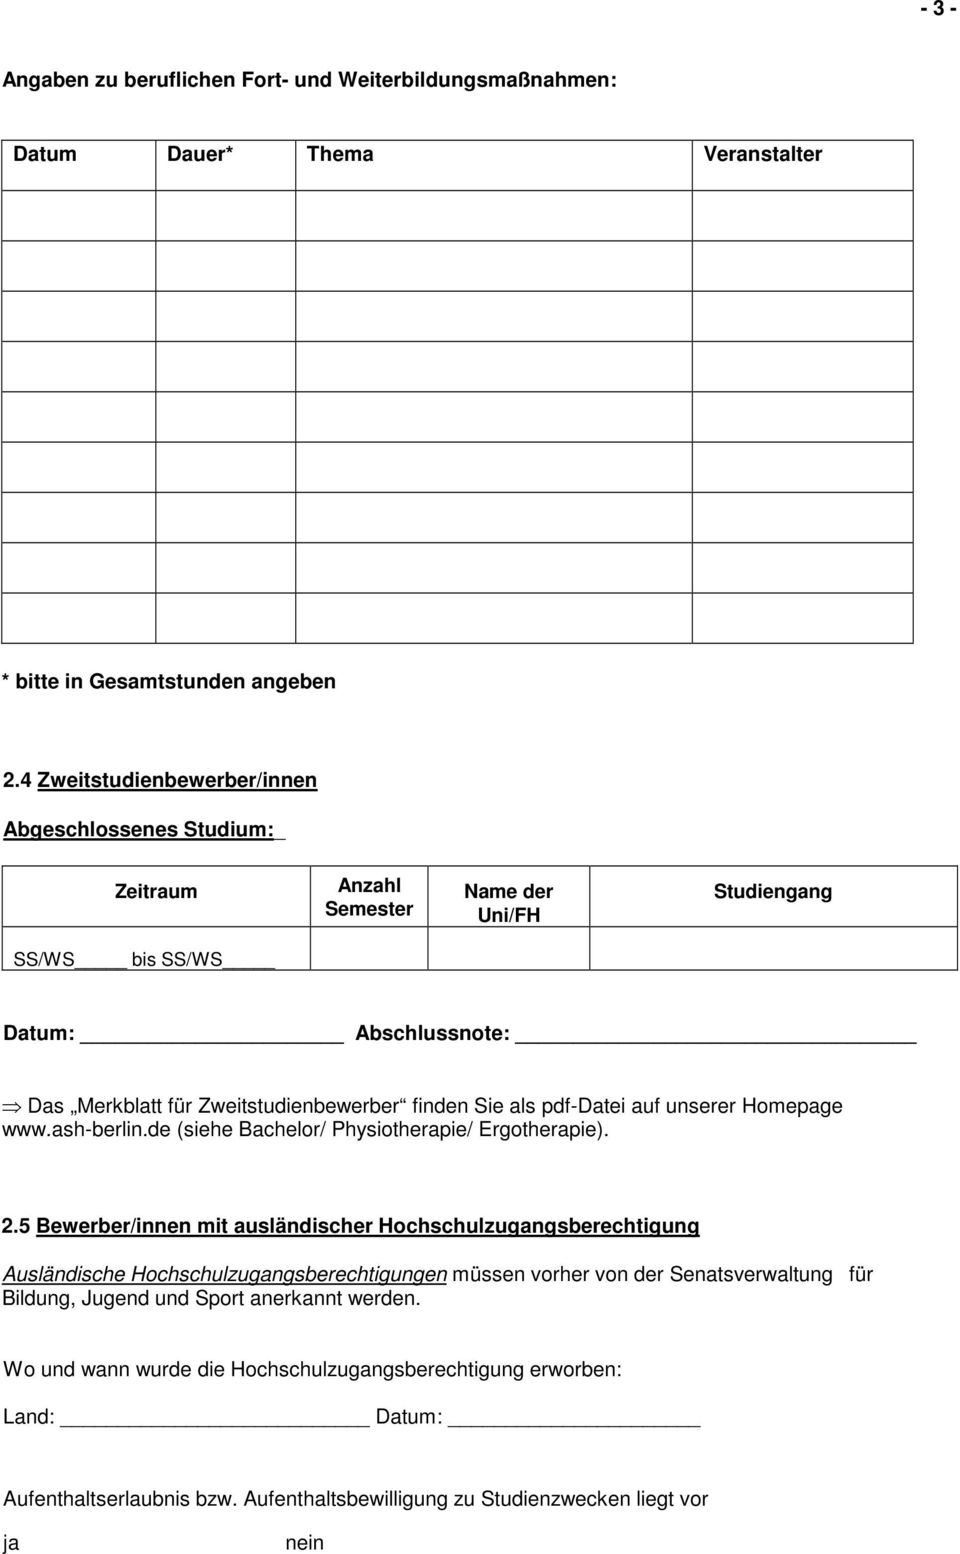 pdf-datei auf unserer Homepage www.ash-berlin.de (siehe Bachelor/ Physiotherapie/ Ergotherapie). 2.